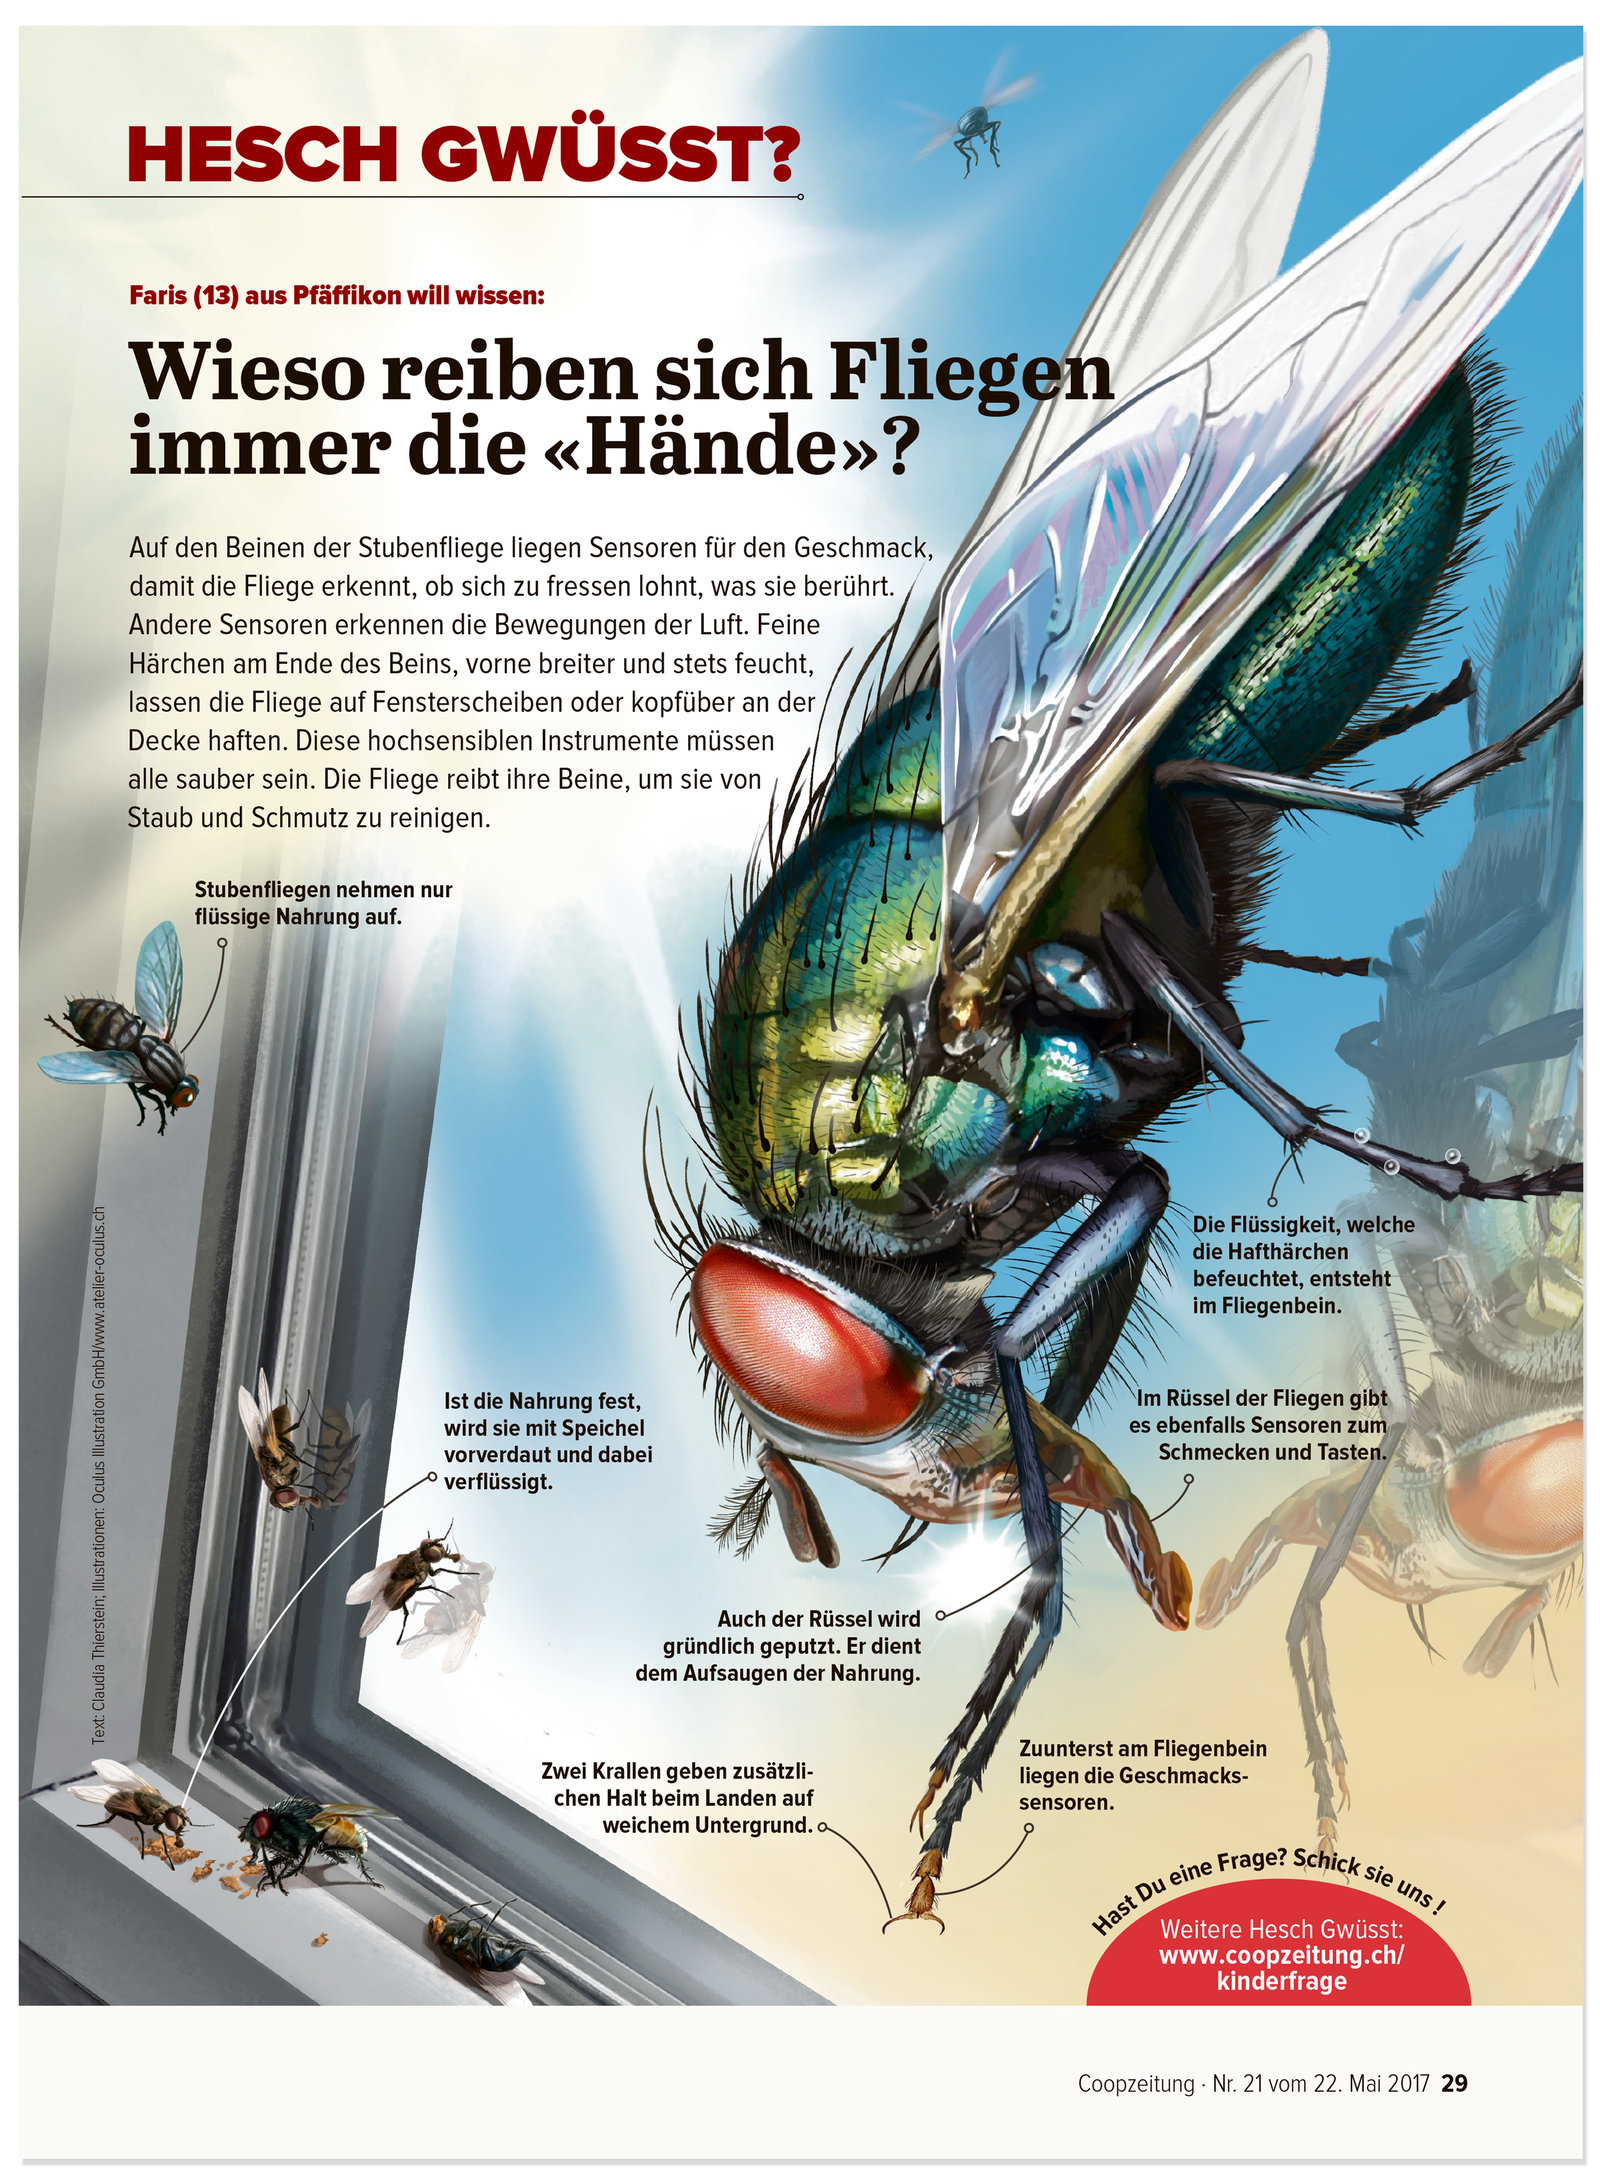 oculus-illustration-coopzeitung-hesch-gwuesst-fliege